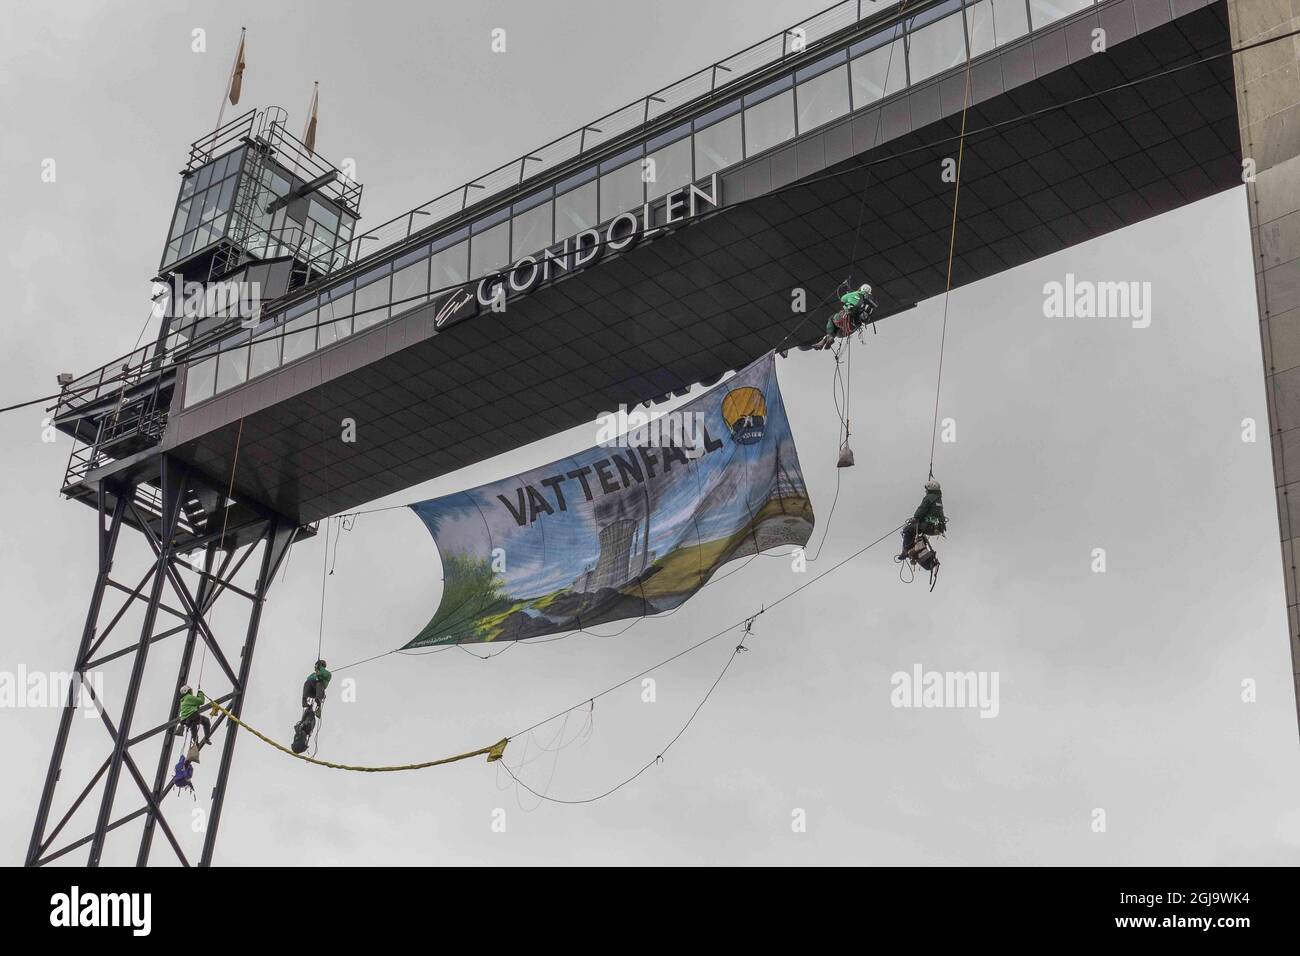 STOCKHOLM 20160427 German activists protesting against SwedenÃ¢Â€Â™s energy giant Vattenfall at the Katarina elevator n central Stockholm, Sweden, April, 27, 2016. Foto: Leif Blom / TT / kod 50080  Stock Photo